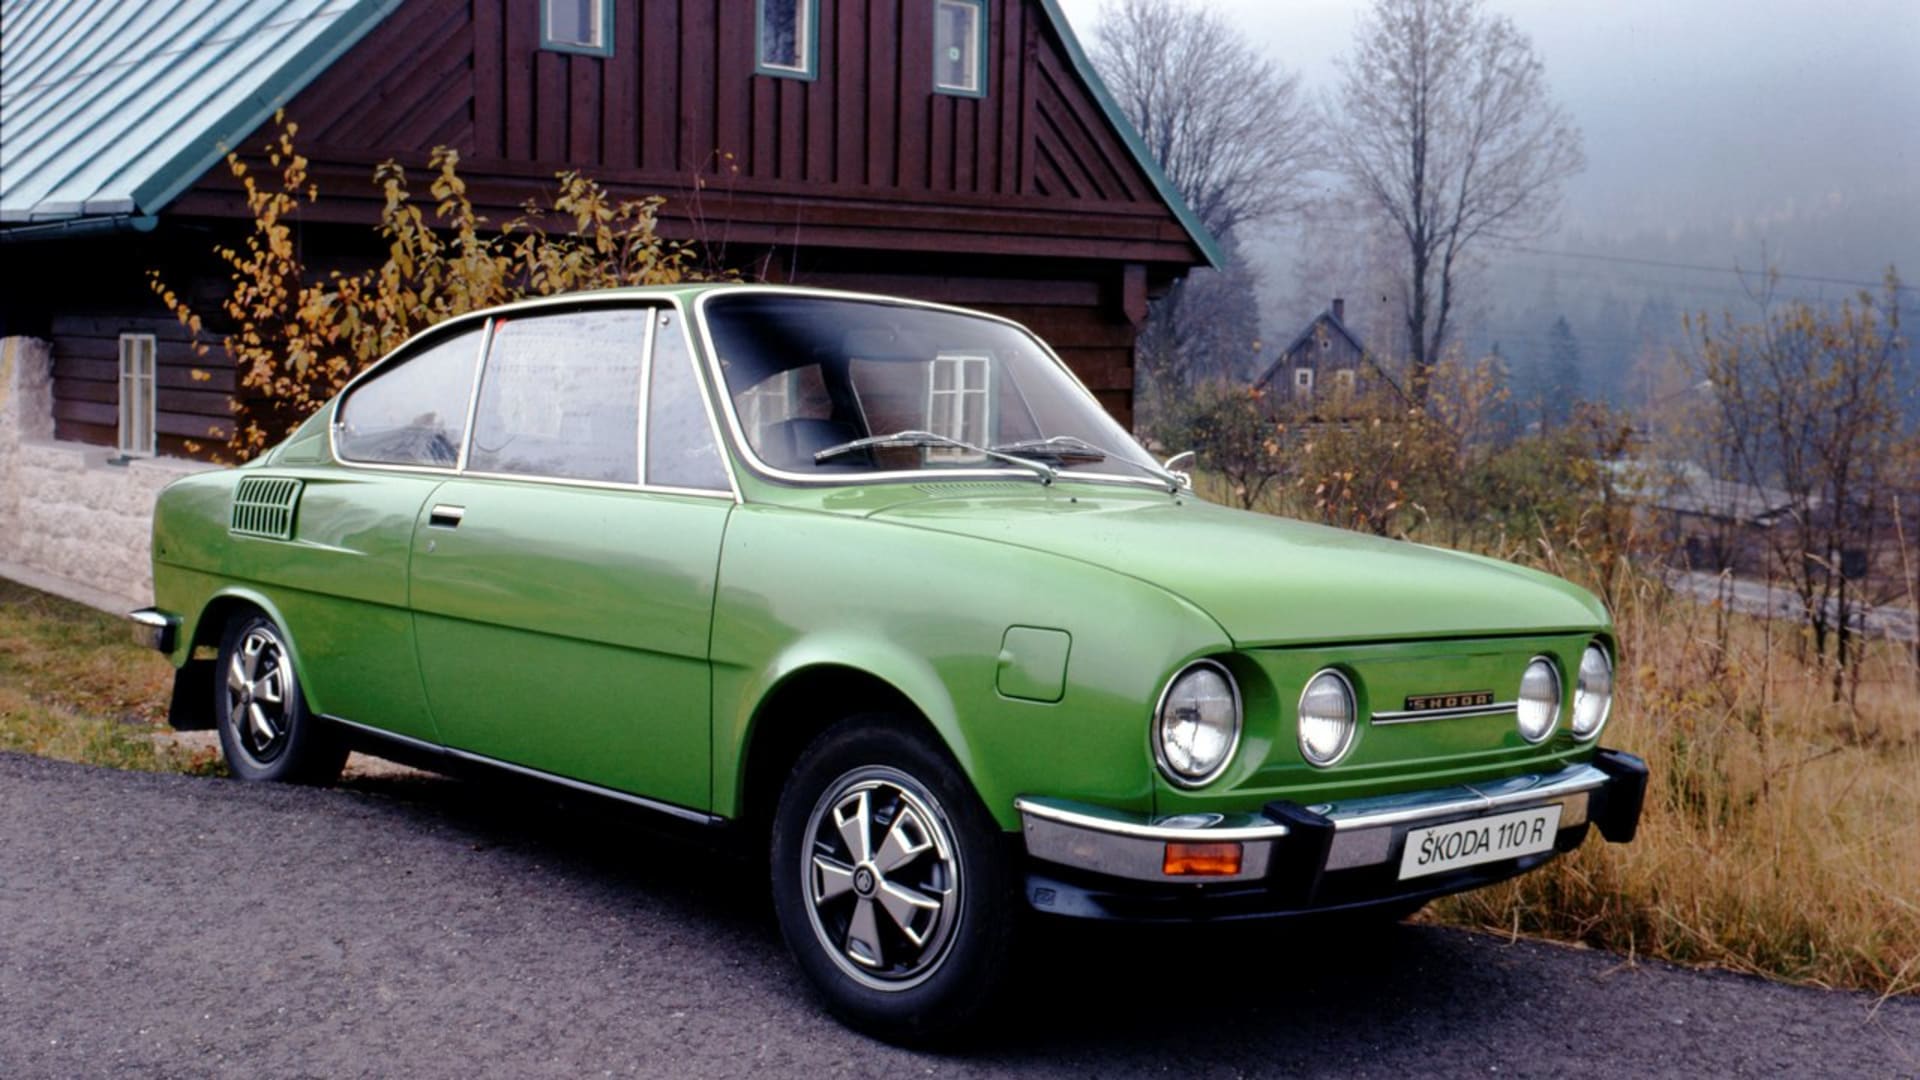 Kupé Škoda 110 R bylo jednou z nejpovedenějších socialistických kreací firmy s okřídleným šípem. Dnešní kvíz je ale i o větších specialitách.